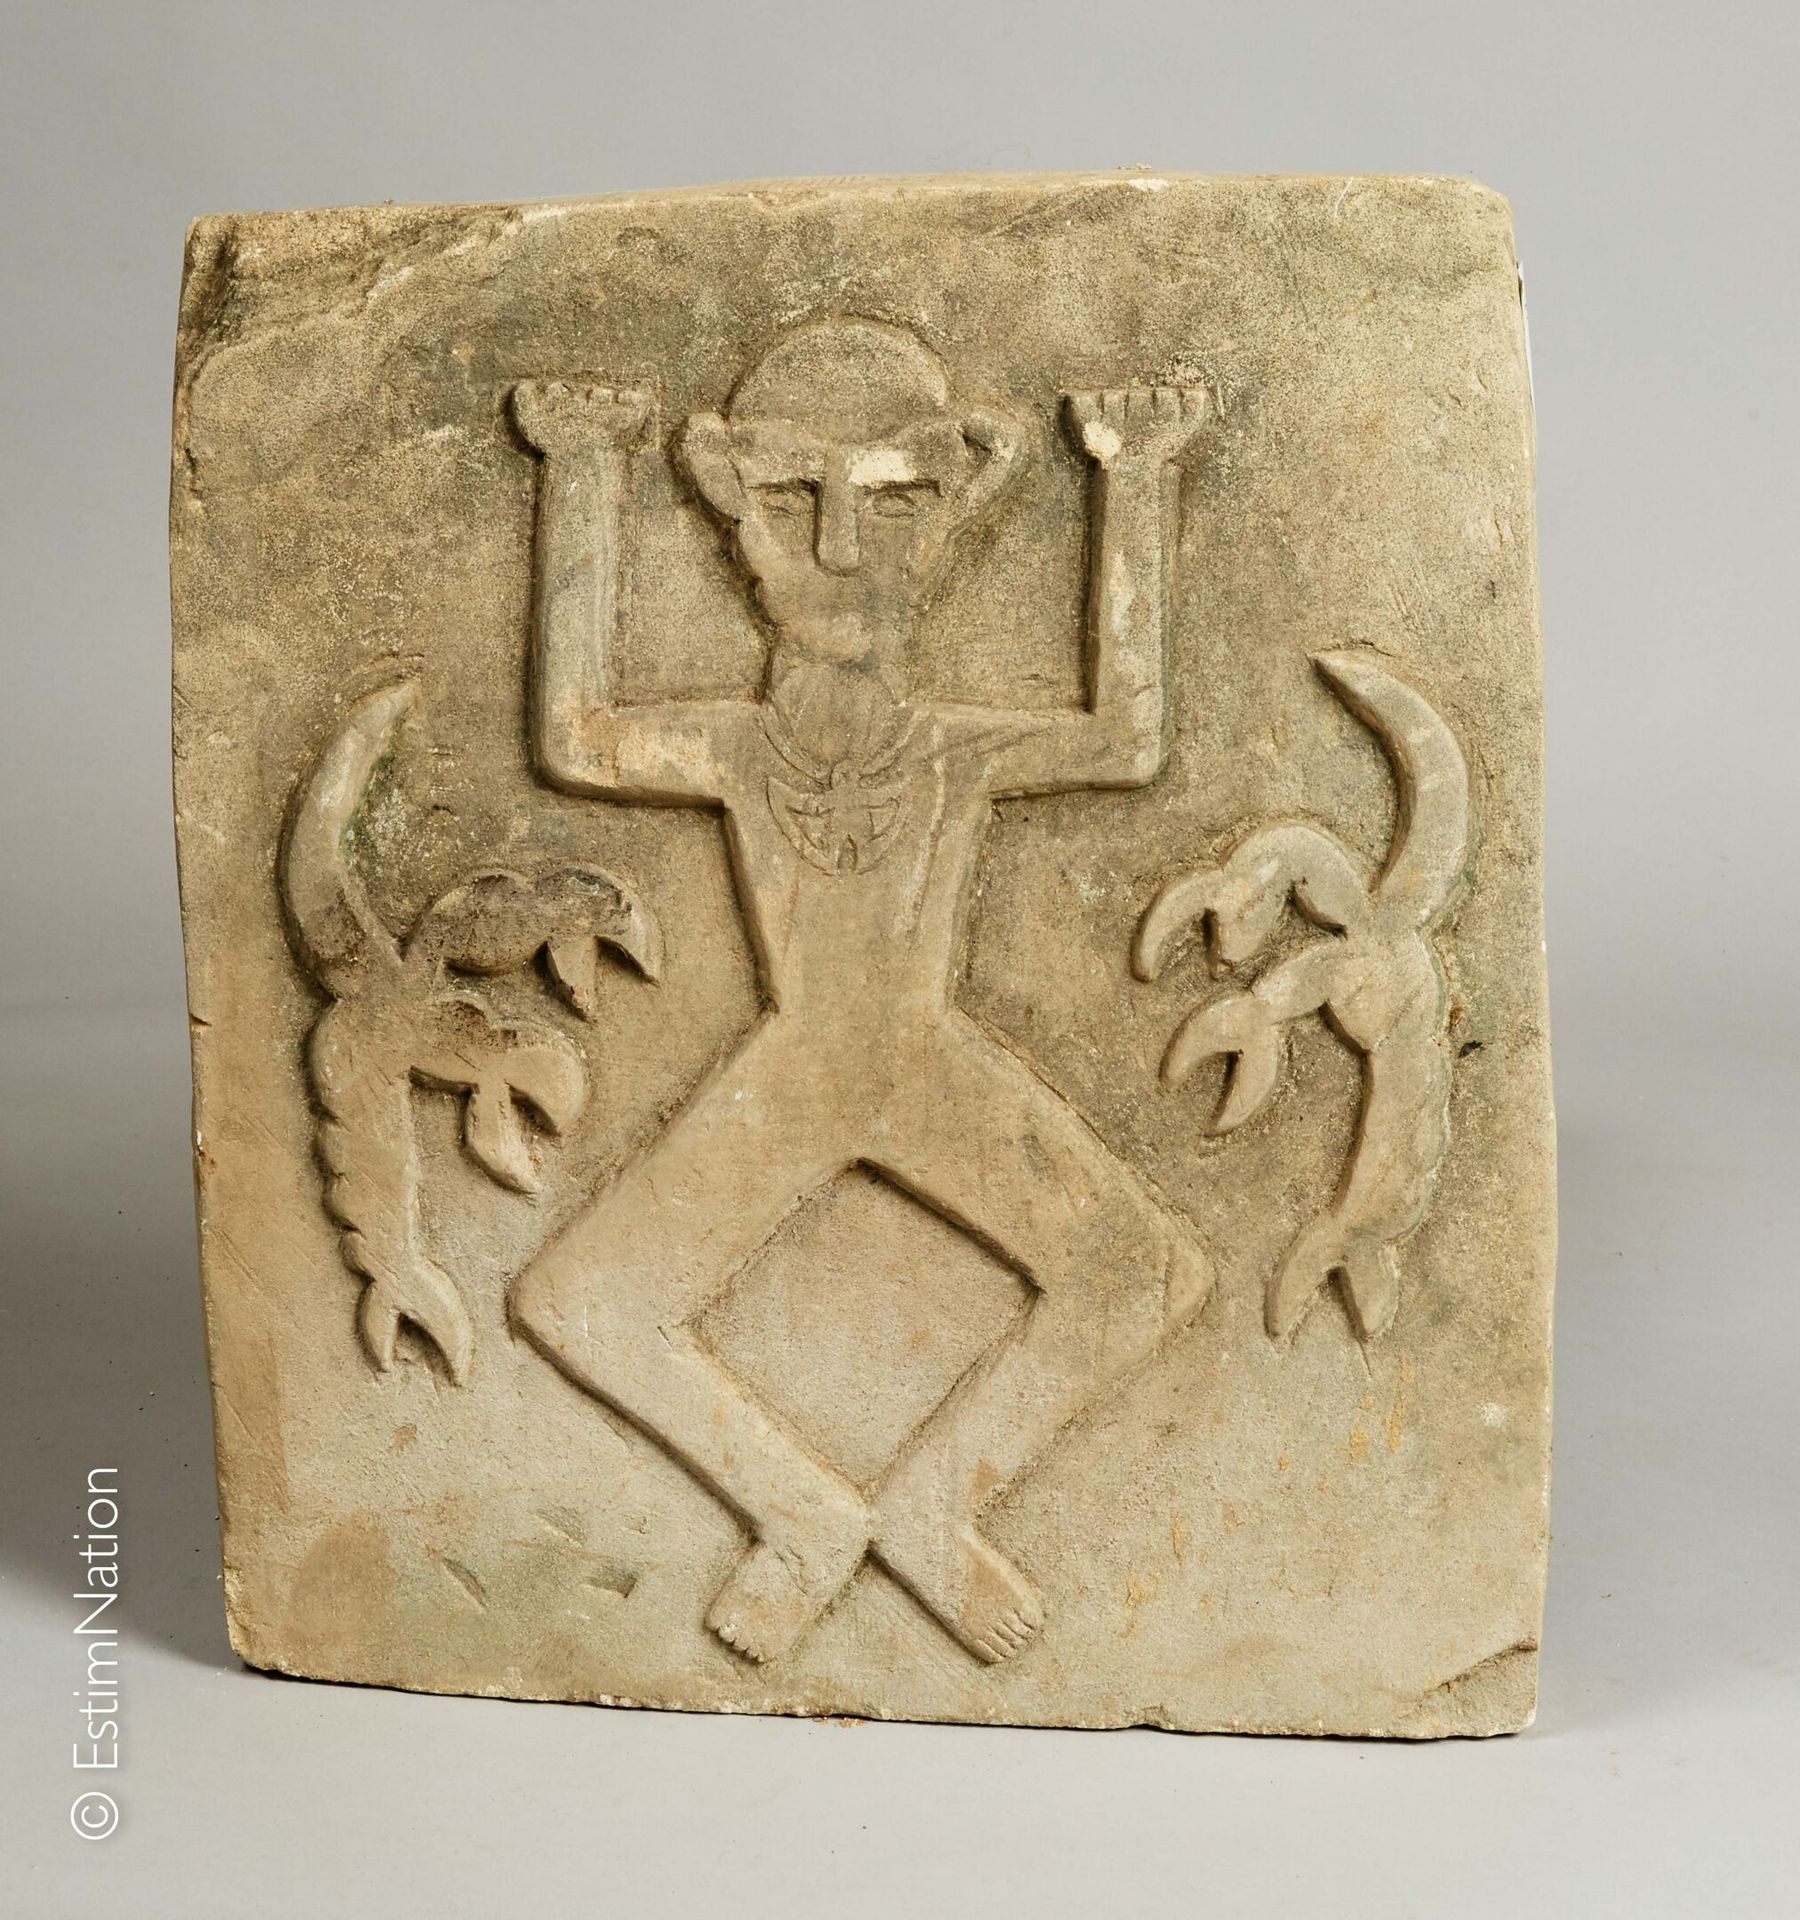 SUMBA SUMBA, iles de la Sonde



Stèle en pierre calcaire à décor sculpté d'un a&hellip;